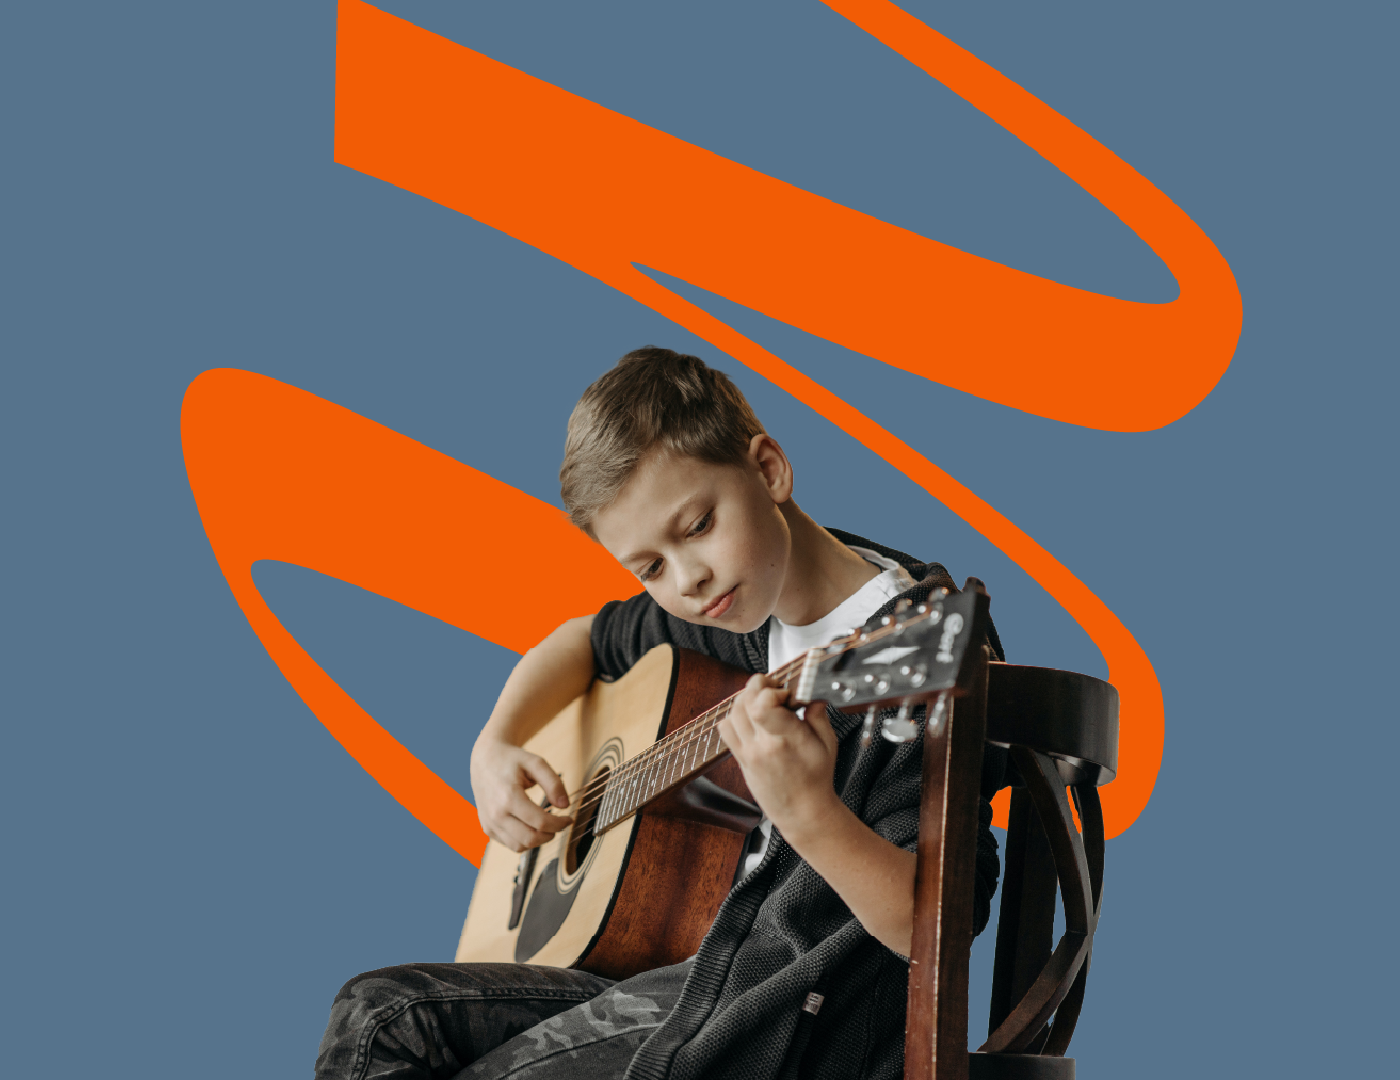 English School escola de música escola online music music school music video school school music Violin Violino